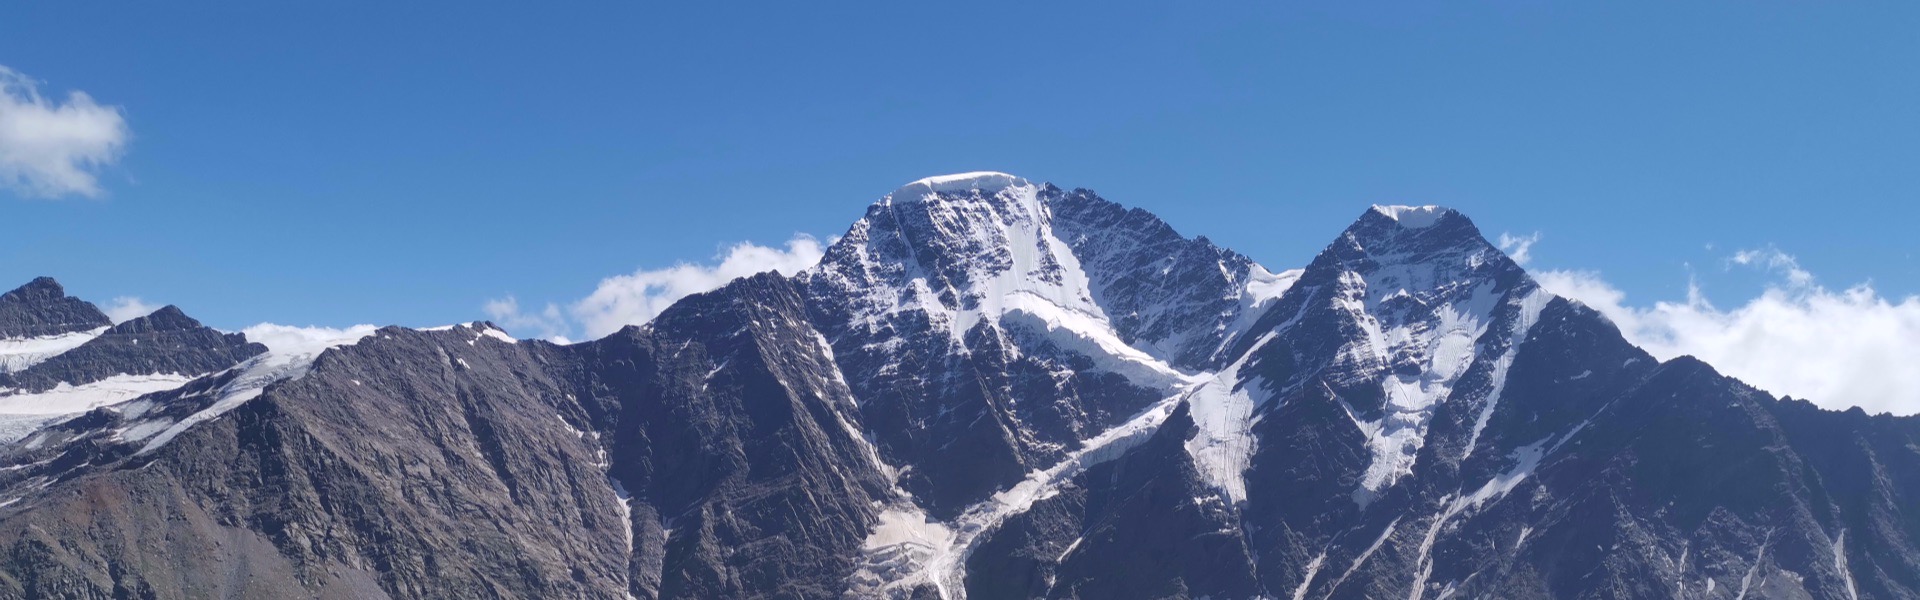 Восхождение на Эльбрус: что нужно знать, чтобы покорить вершину